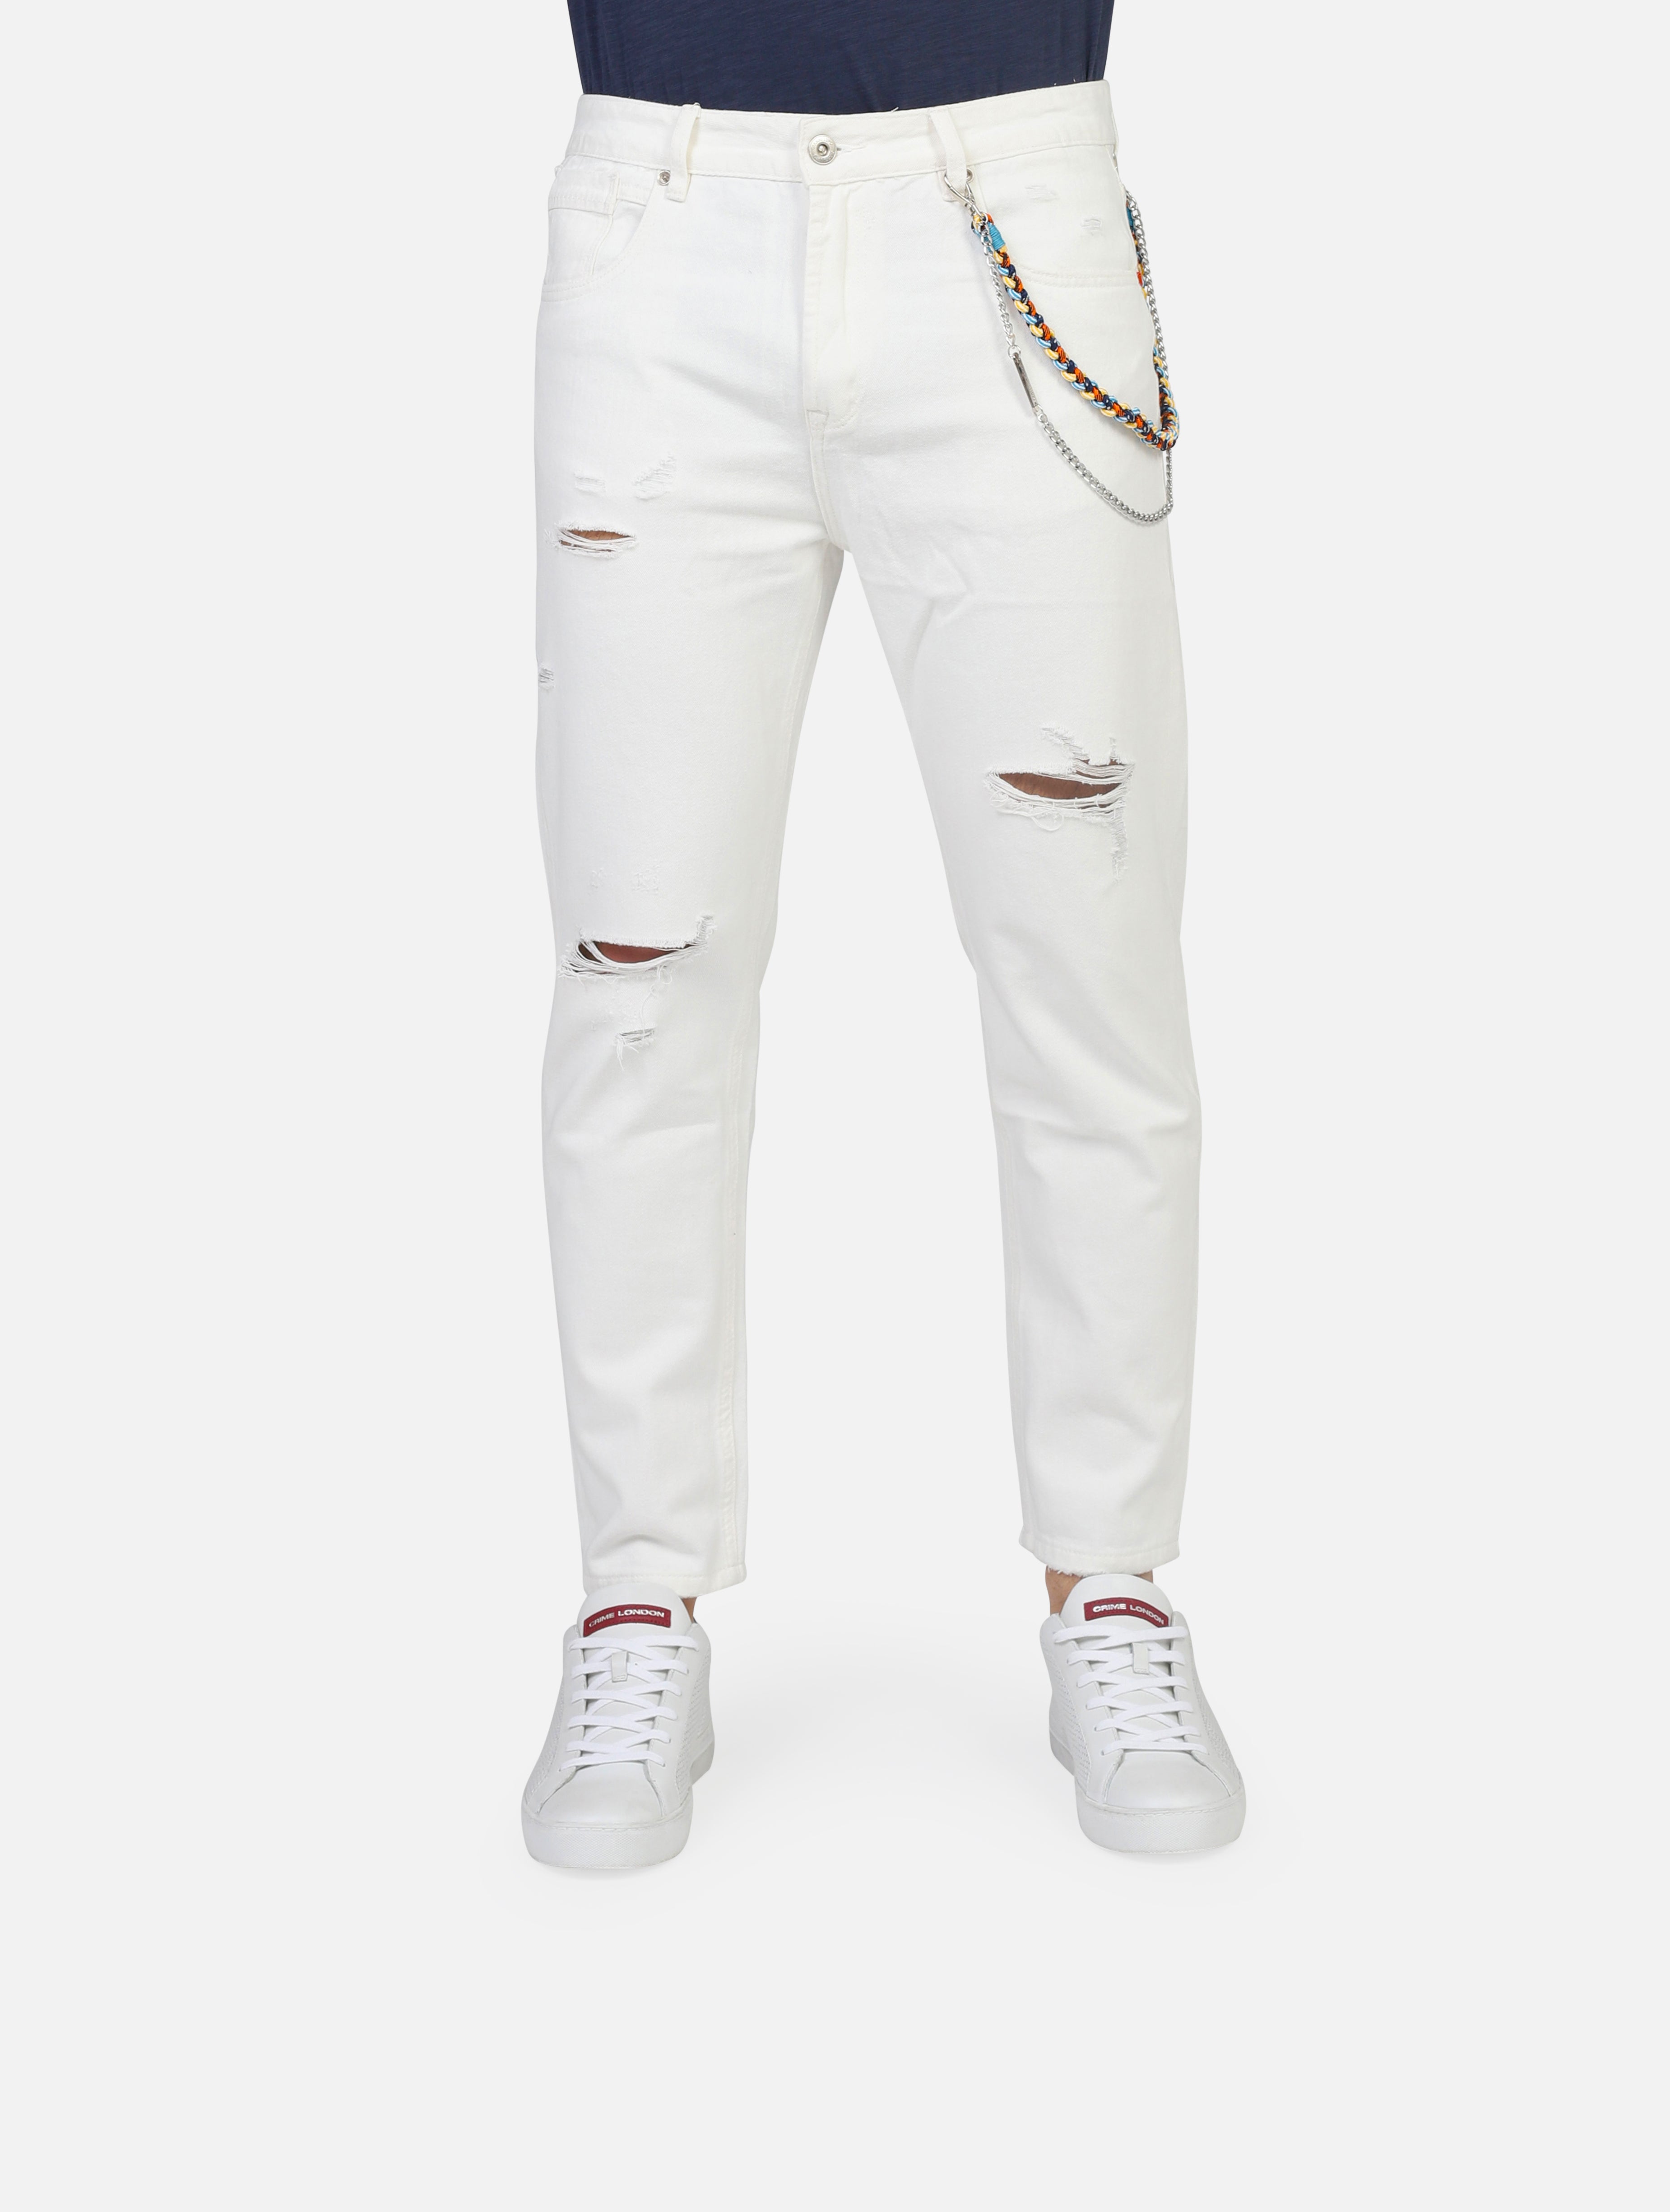 Jeans gianni lupo  white uomo  - 1